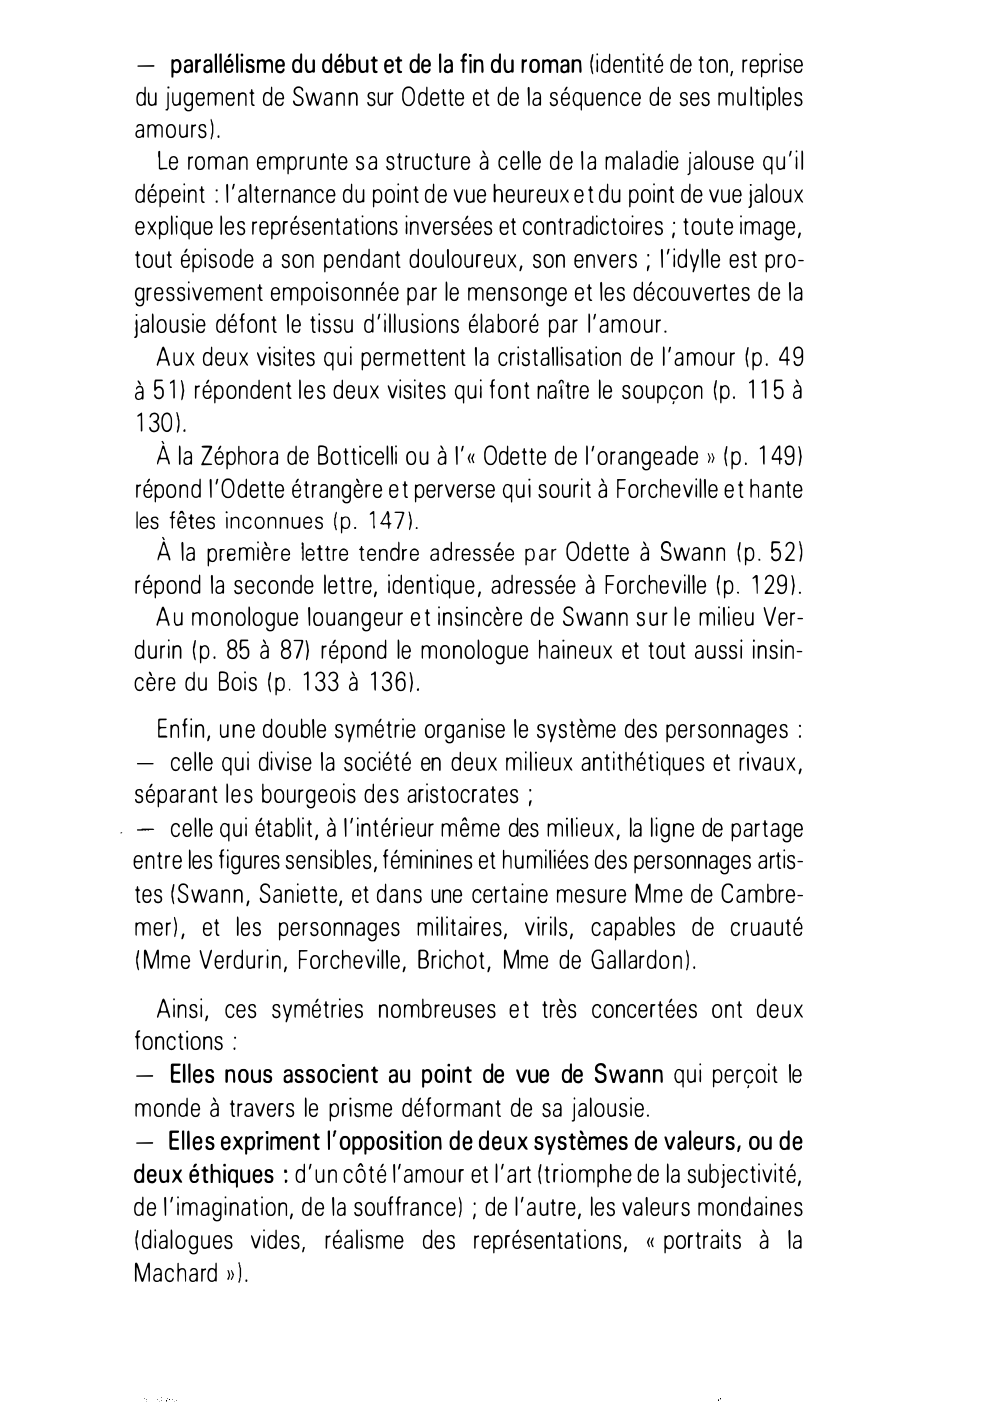 Prévisualisation du document LA STRUCTURE DU ROMAN : ÉCHOS ET PARALLÉLISMES  dans "Un amour de Swann" de Proust